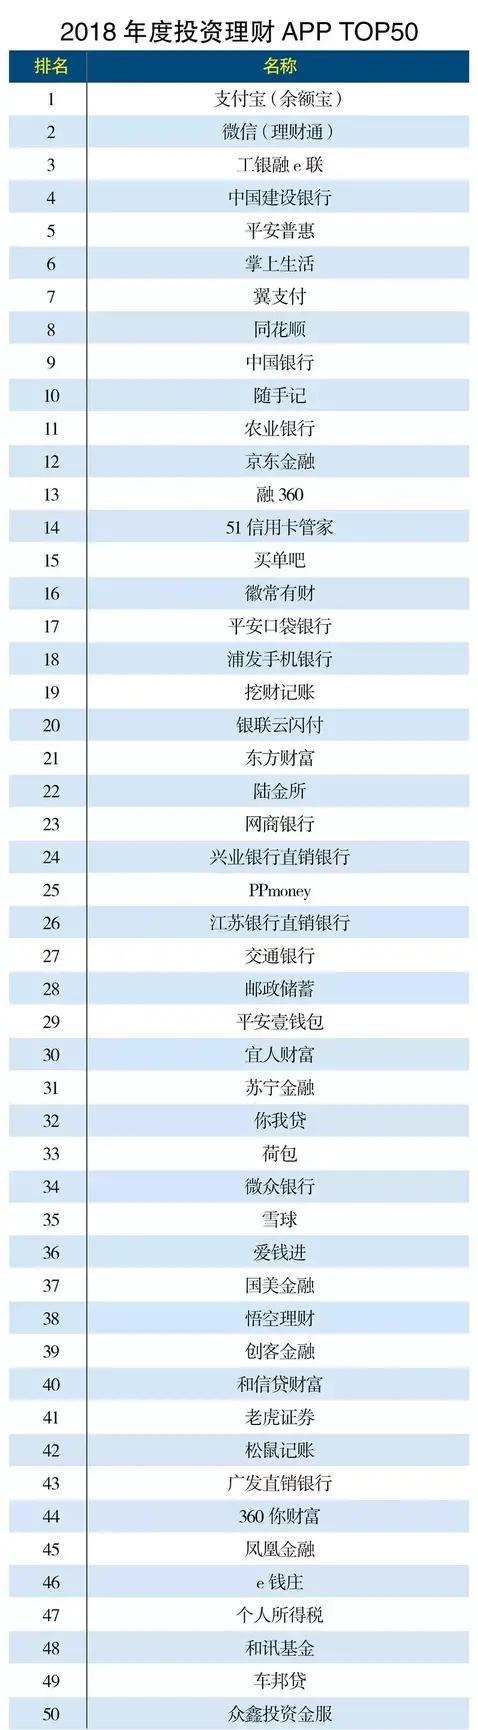 p2p理财安全排名前十名(中国p2p理财排行榜)